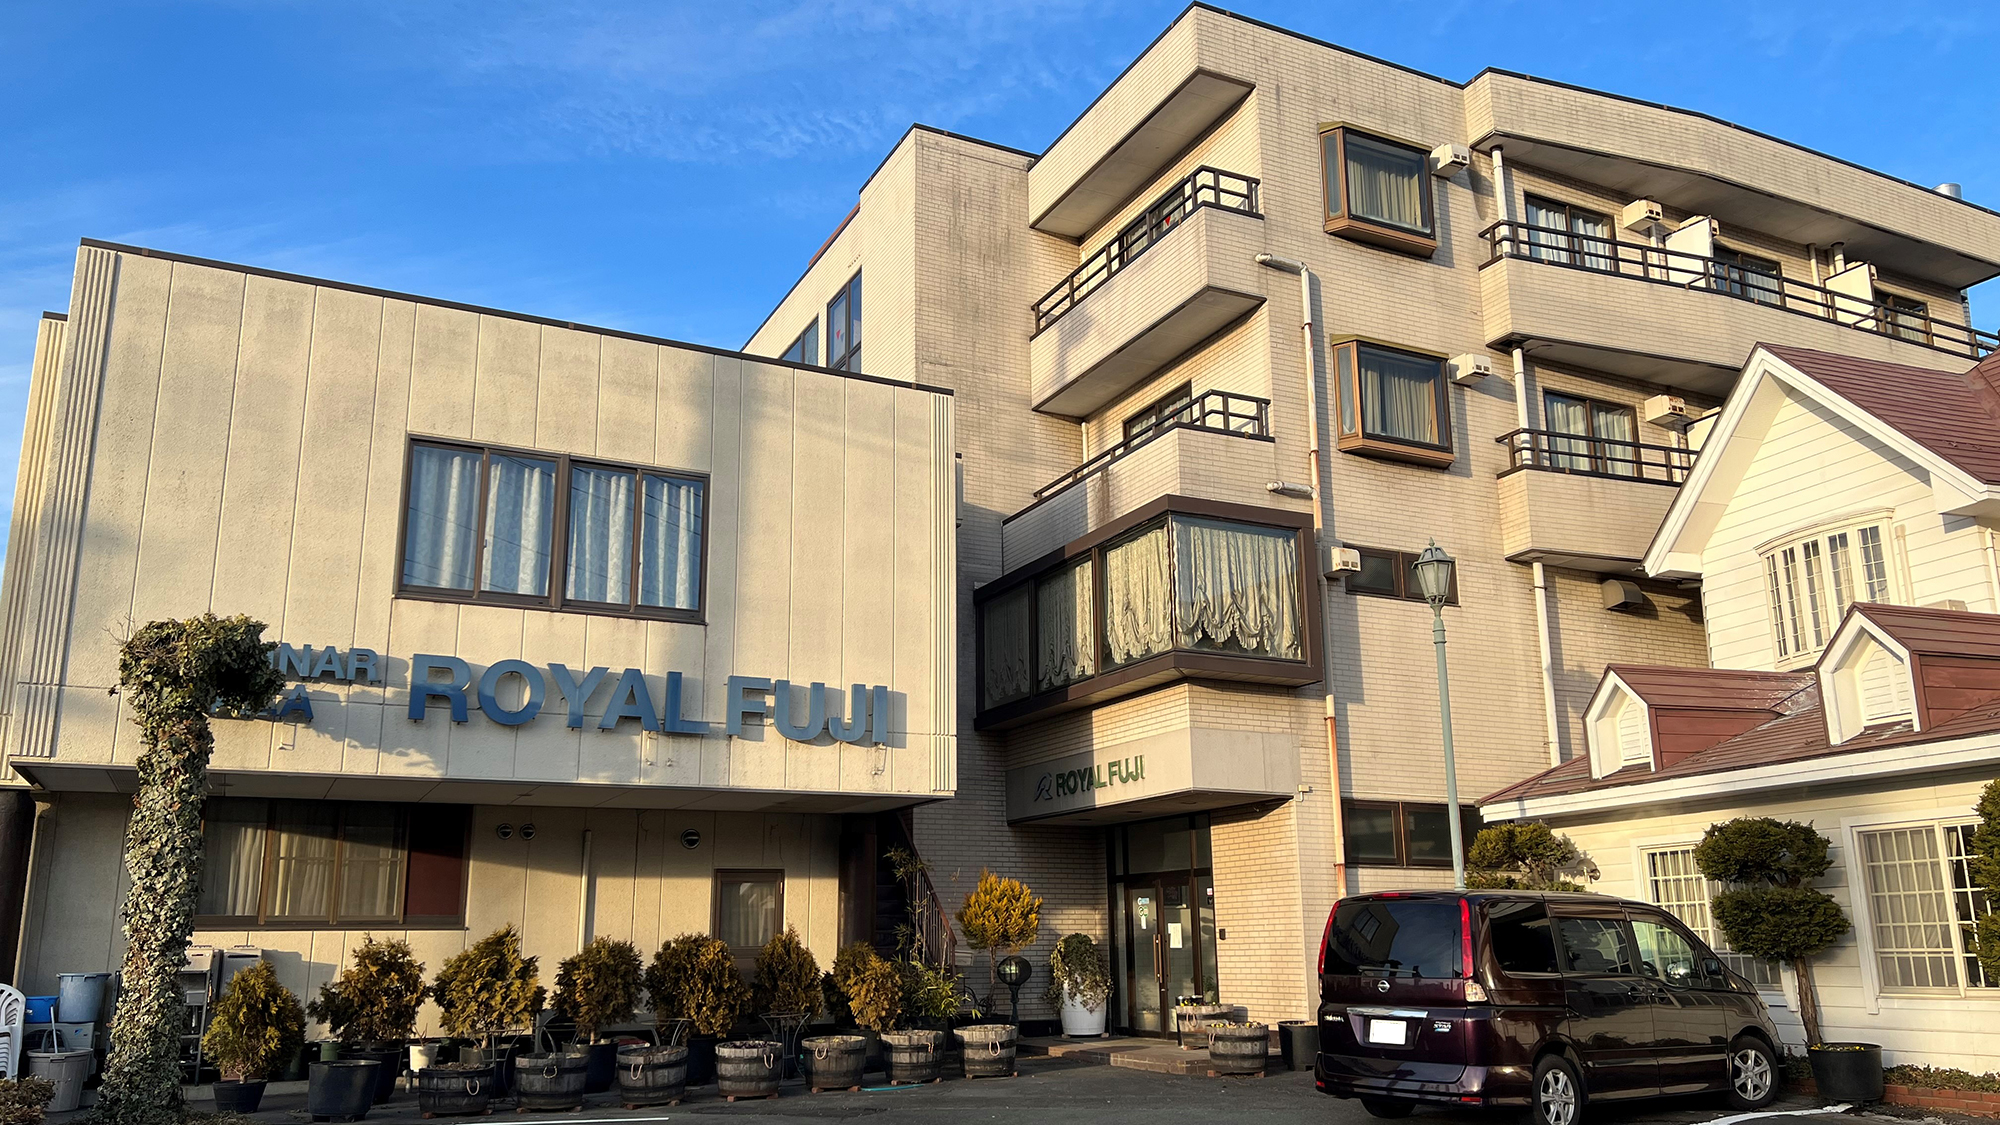 Seminar Plaza Royal Fuji